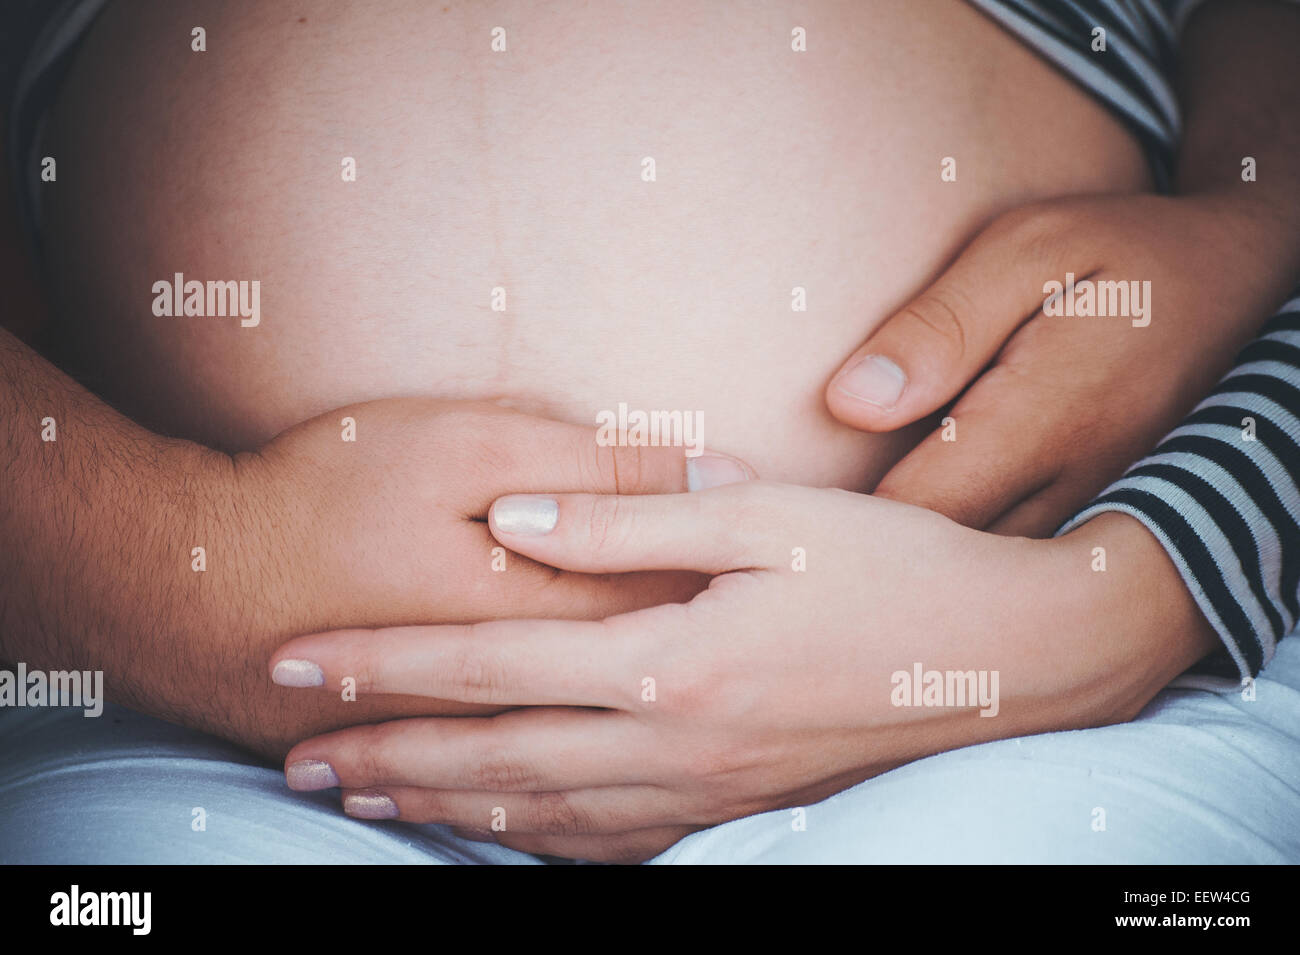 Männer hält Hände auf Bauch der schwangeren kein Gesicht Stockfoto